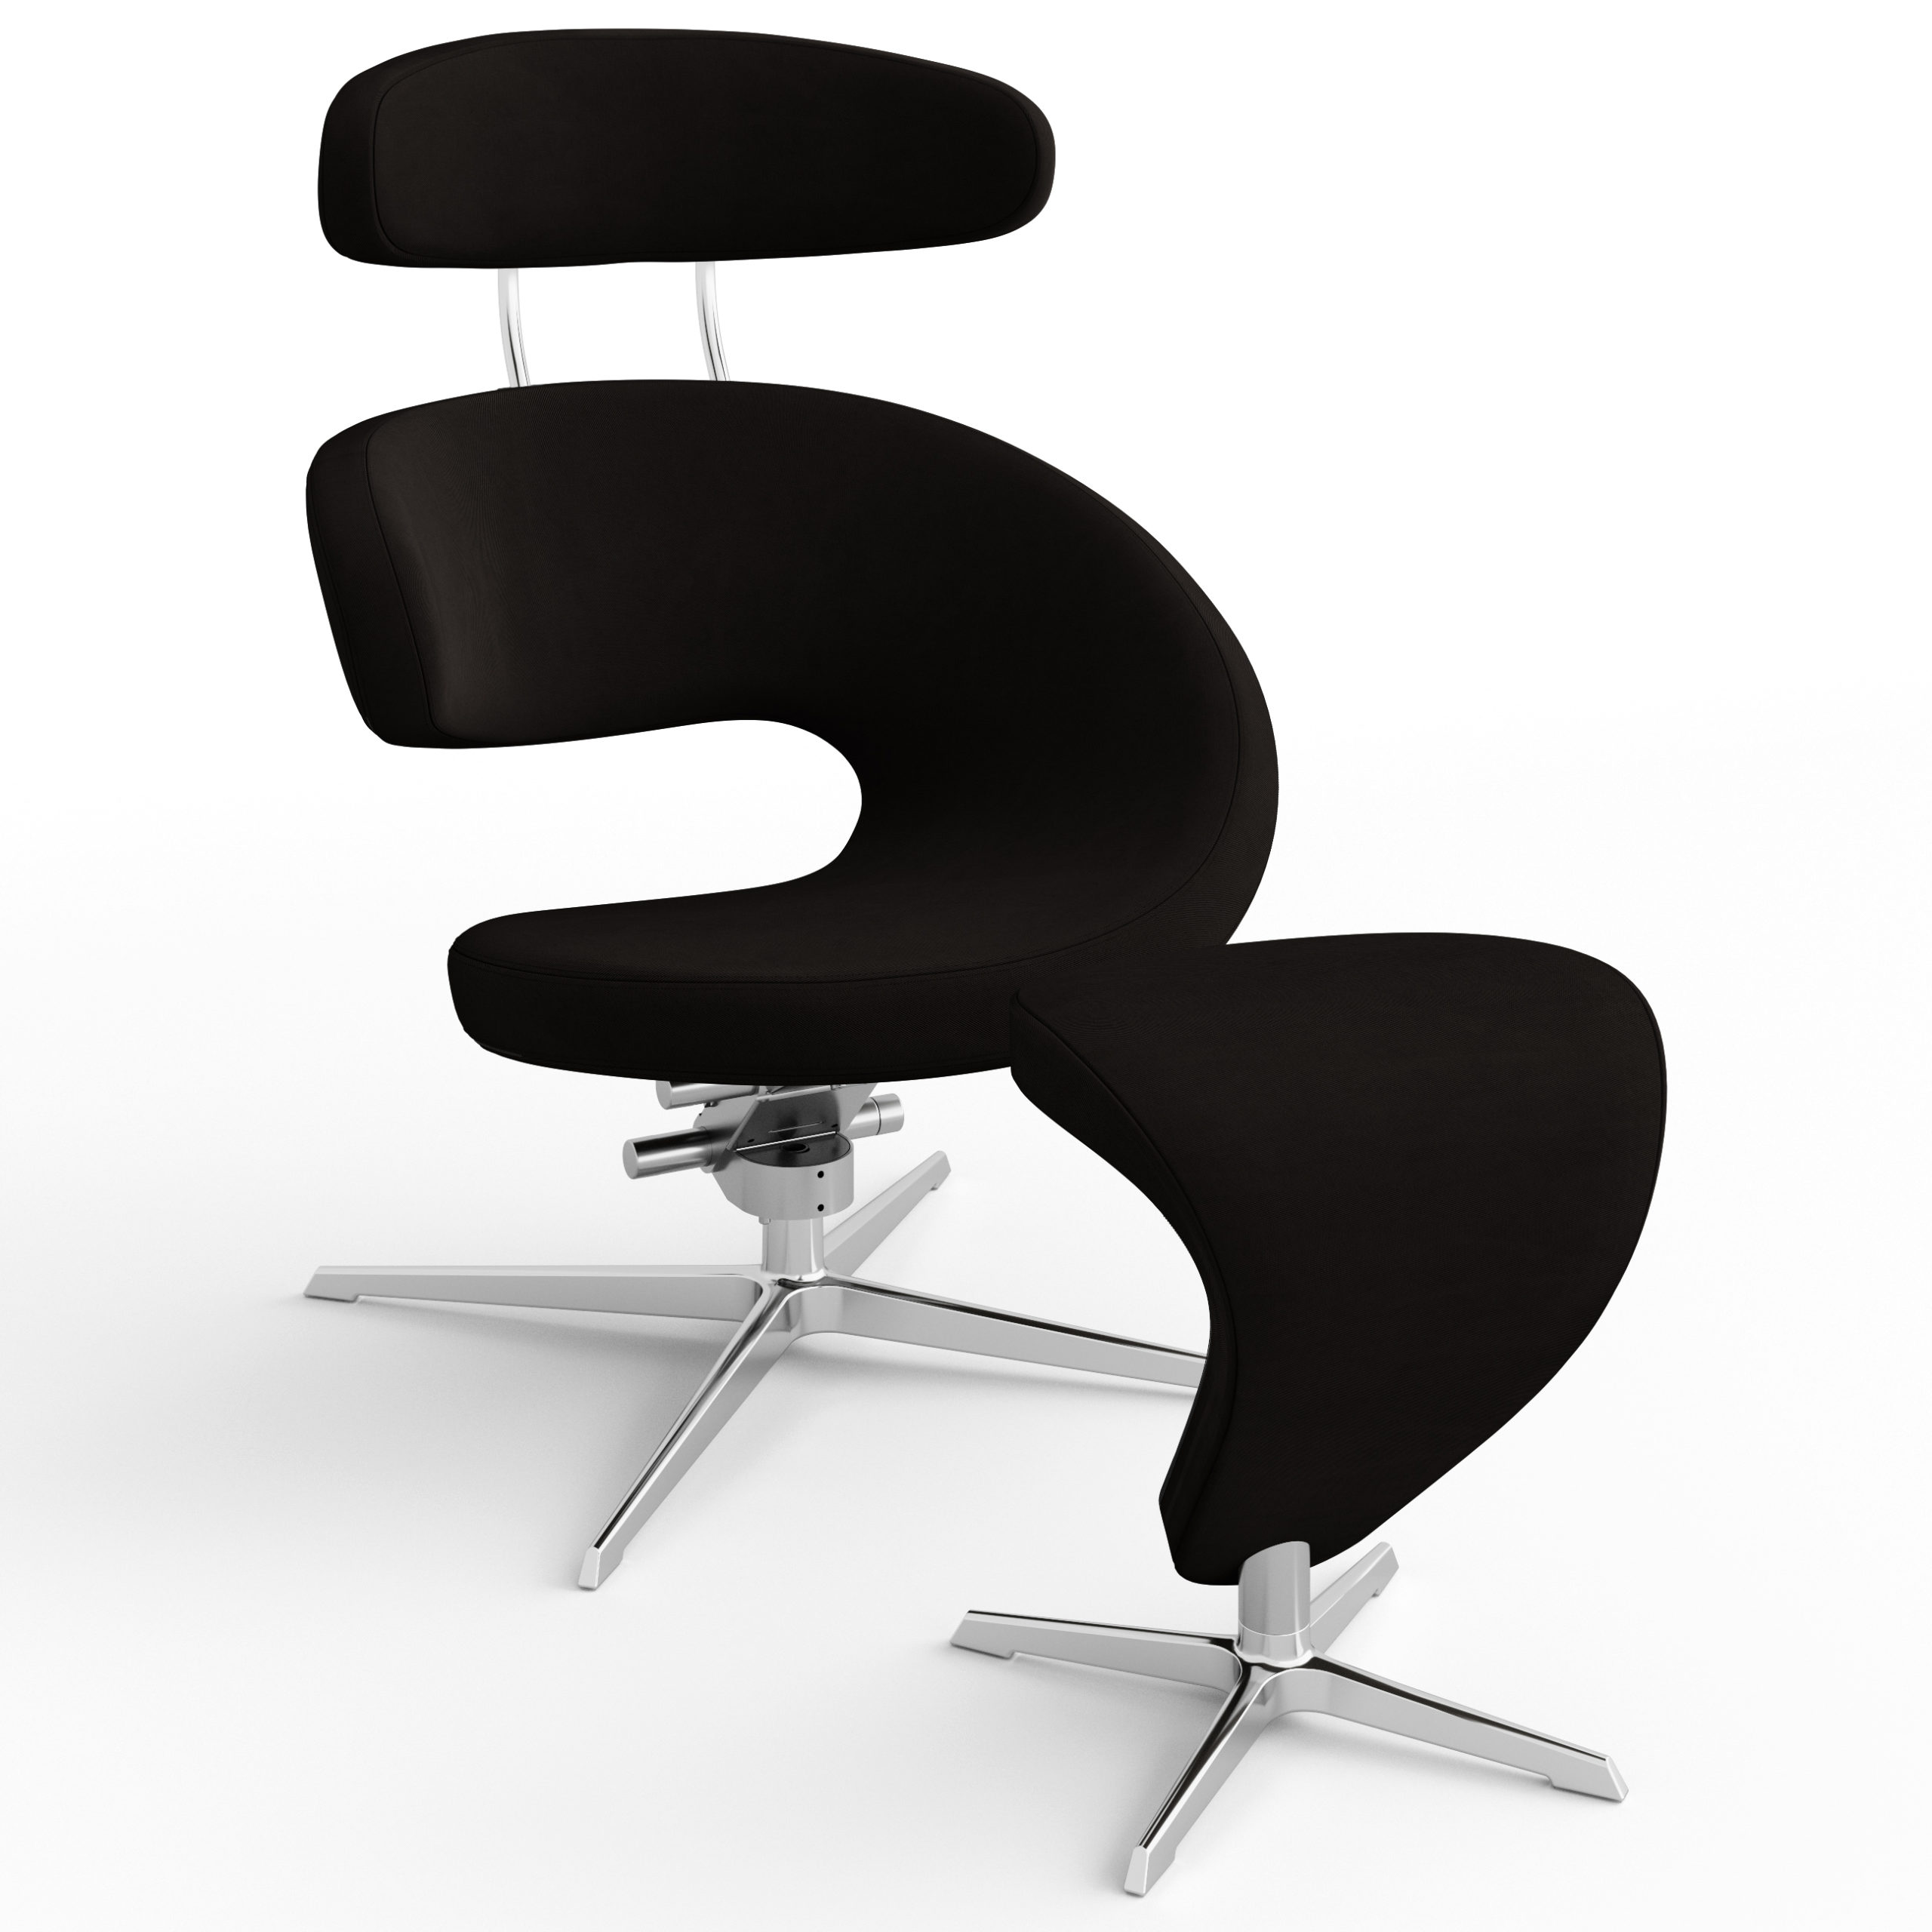 Tanke redaktionelle Immunitet Varier Peel™ - Modern Reclining Swivel Chair Footrest - Varier Chairs